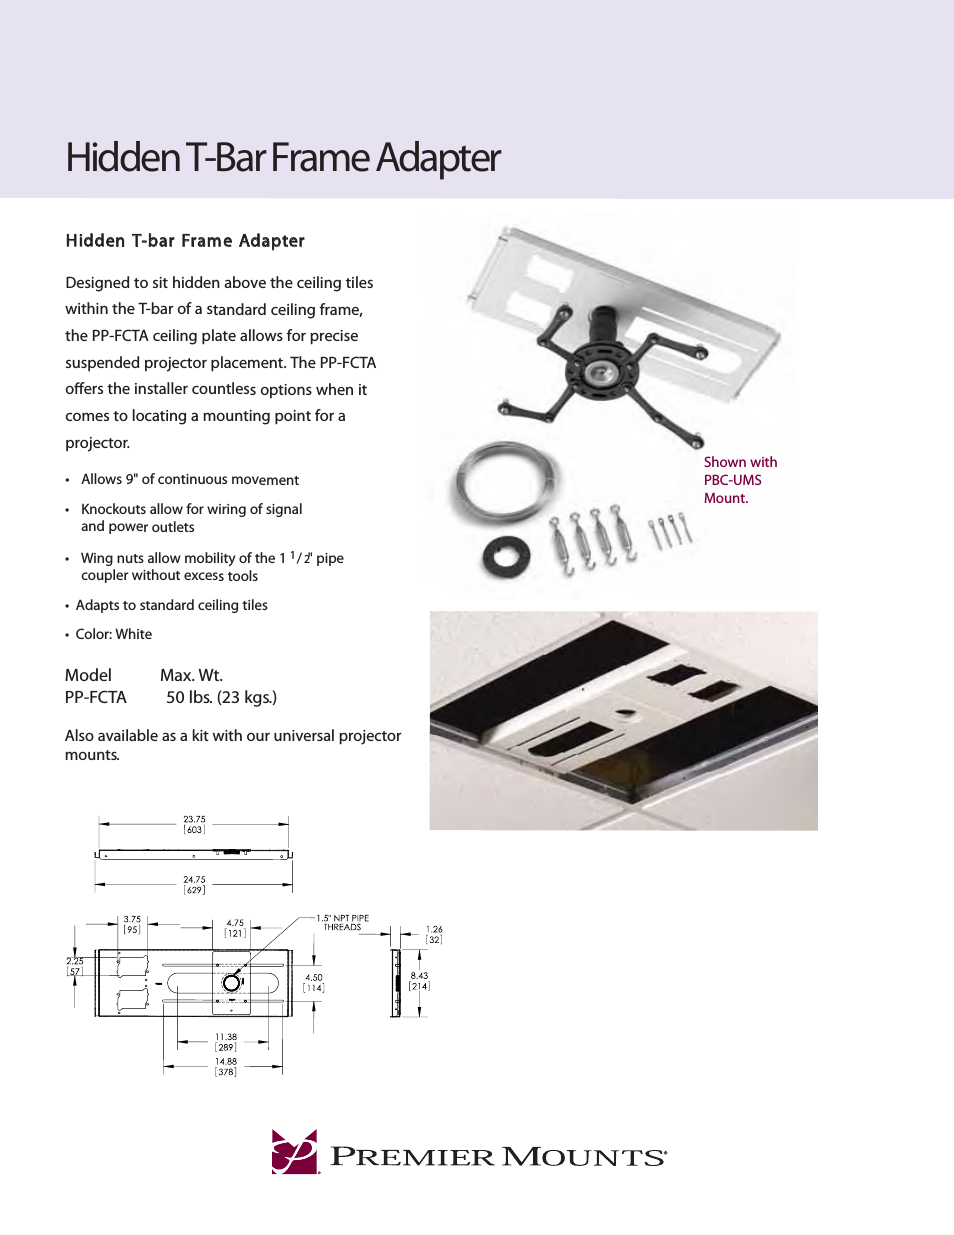 Hidden T-bar Frame Adapter PP-FCTA